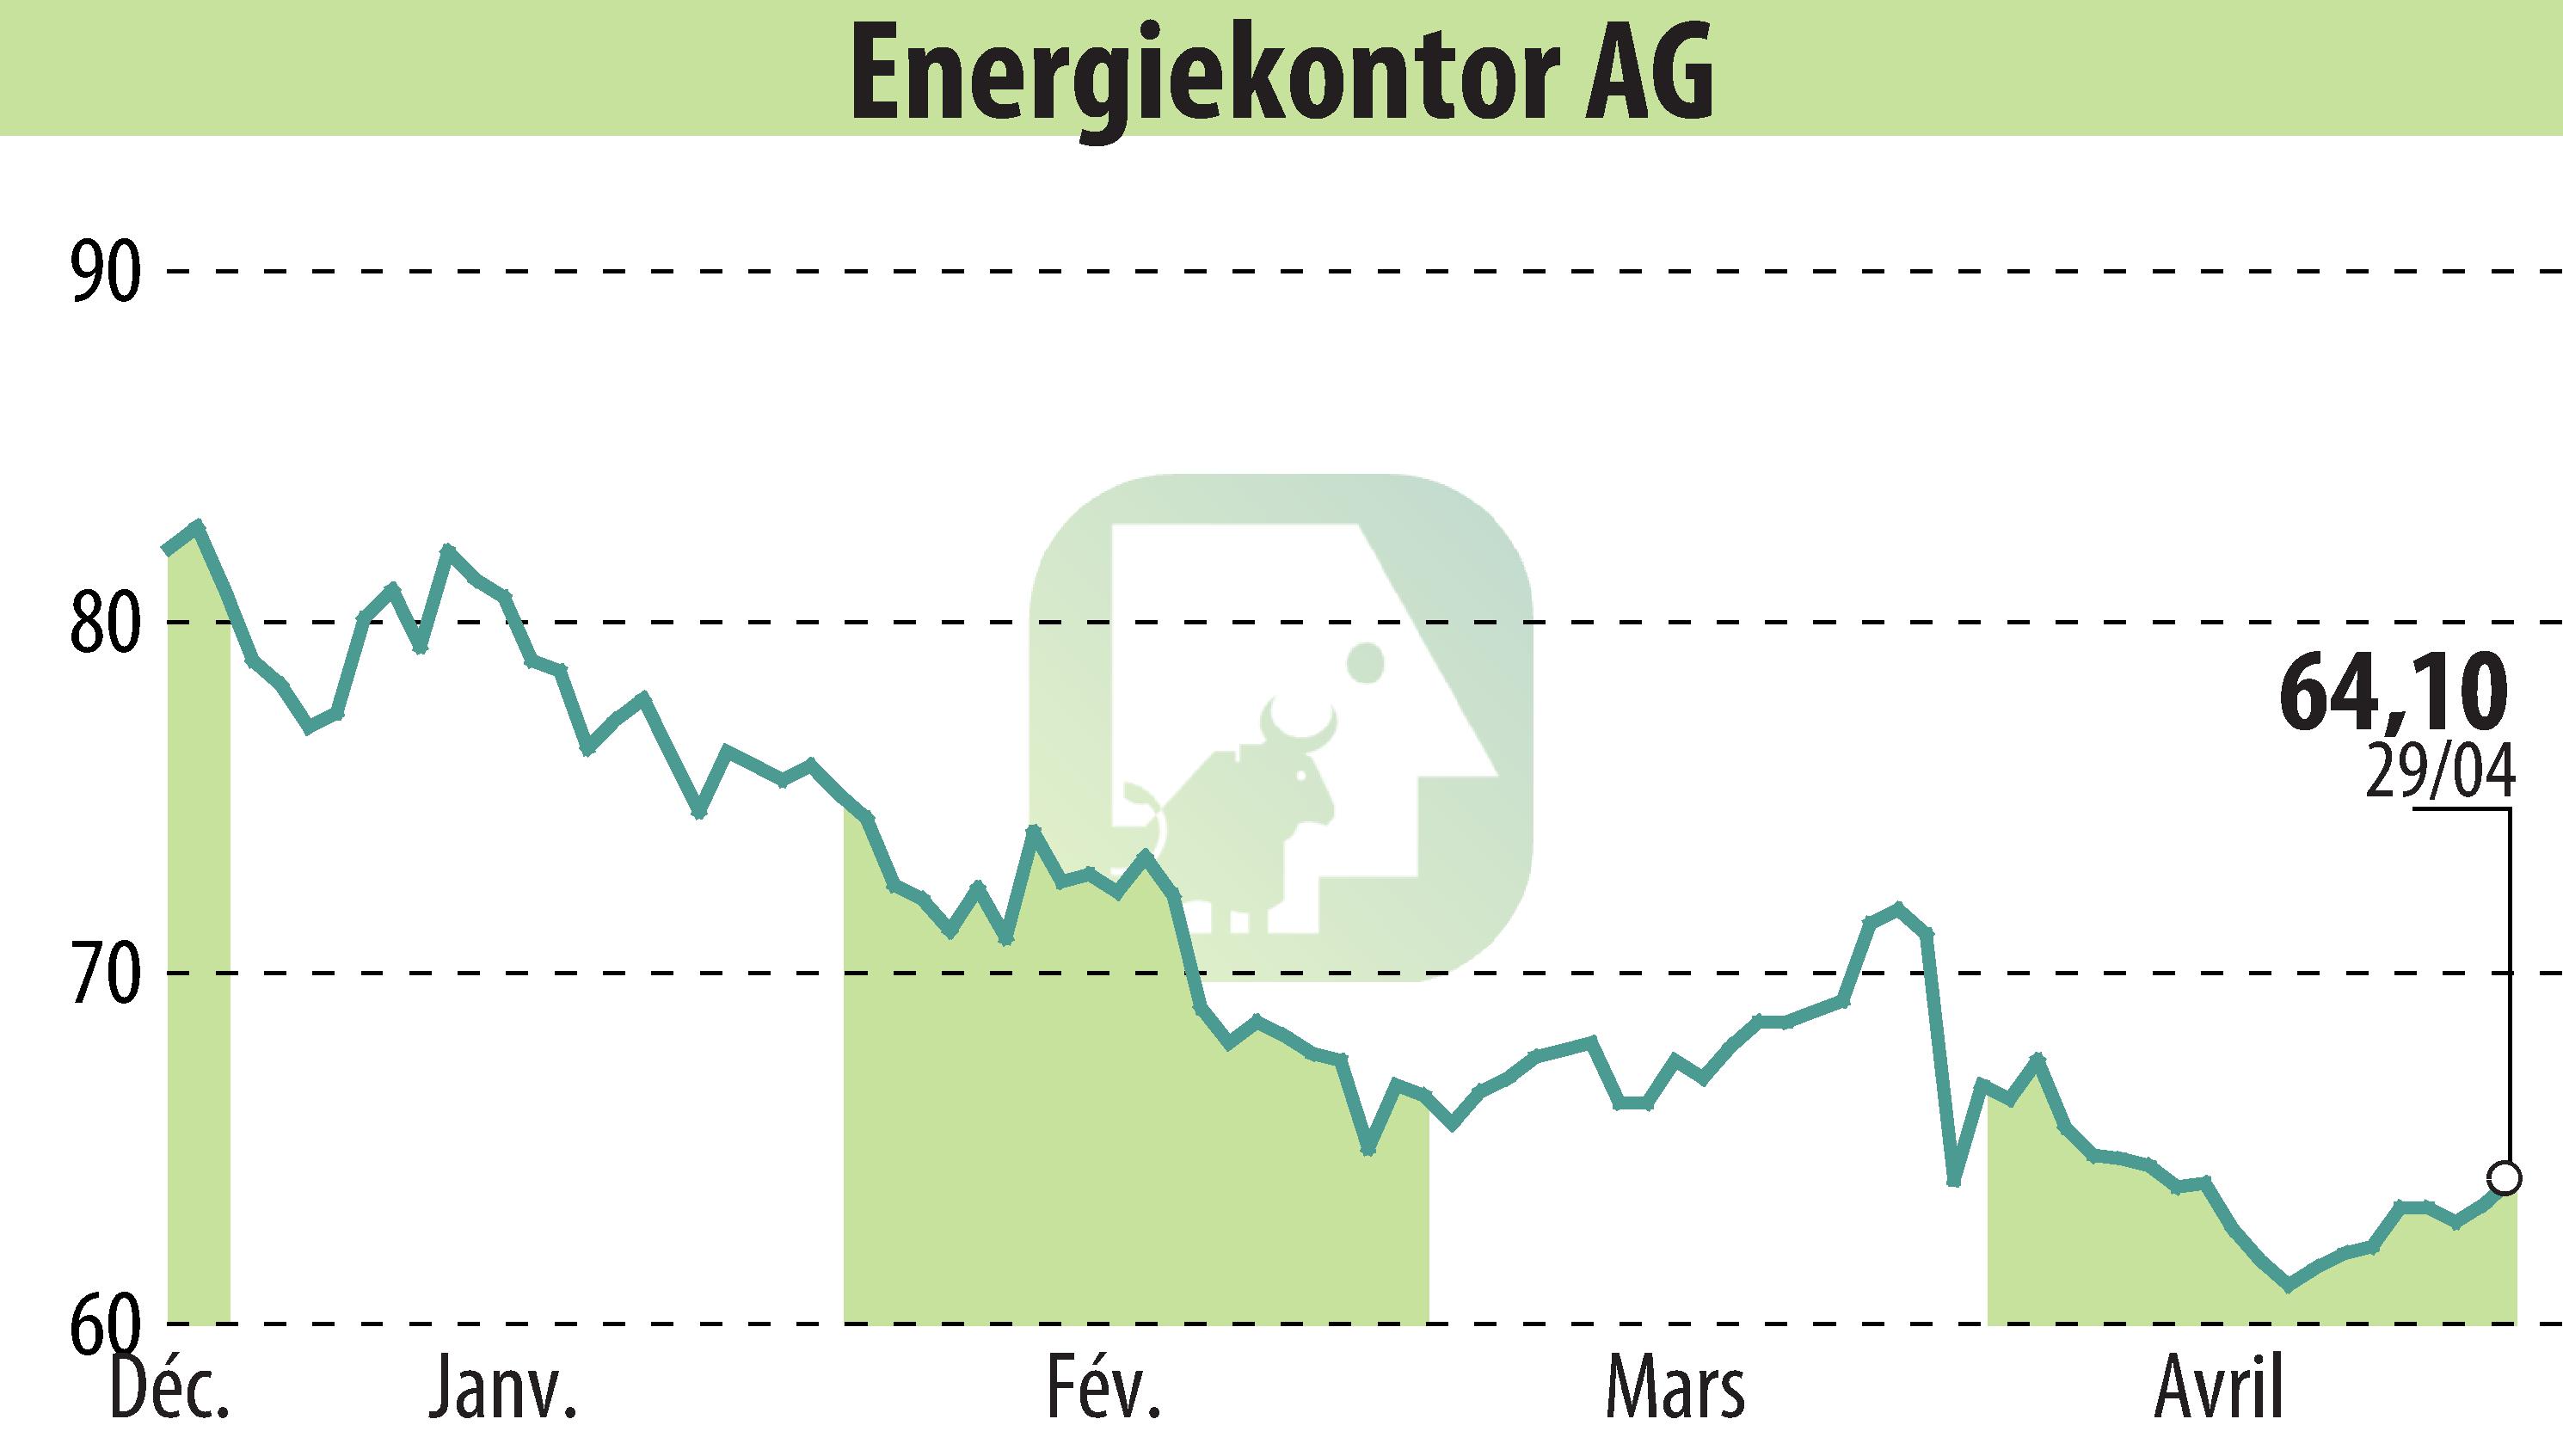 Graphique de l'évolution du cours de l'action Energiekontor AG (EBR:EKT).